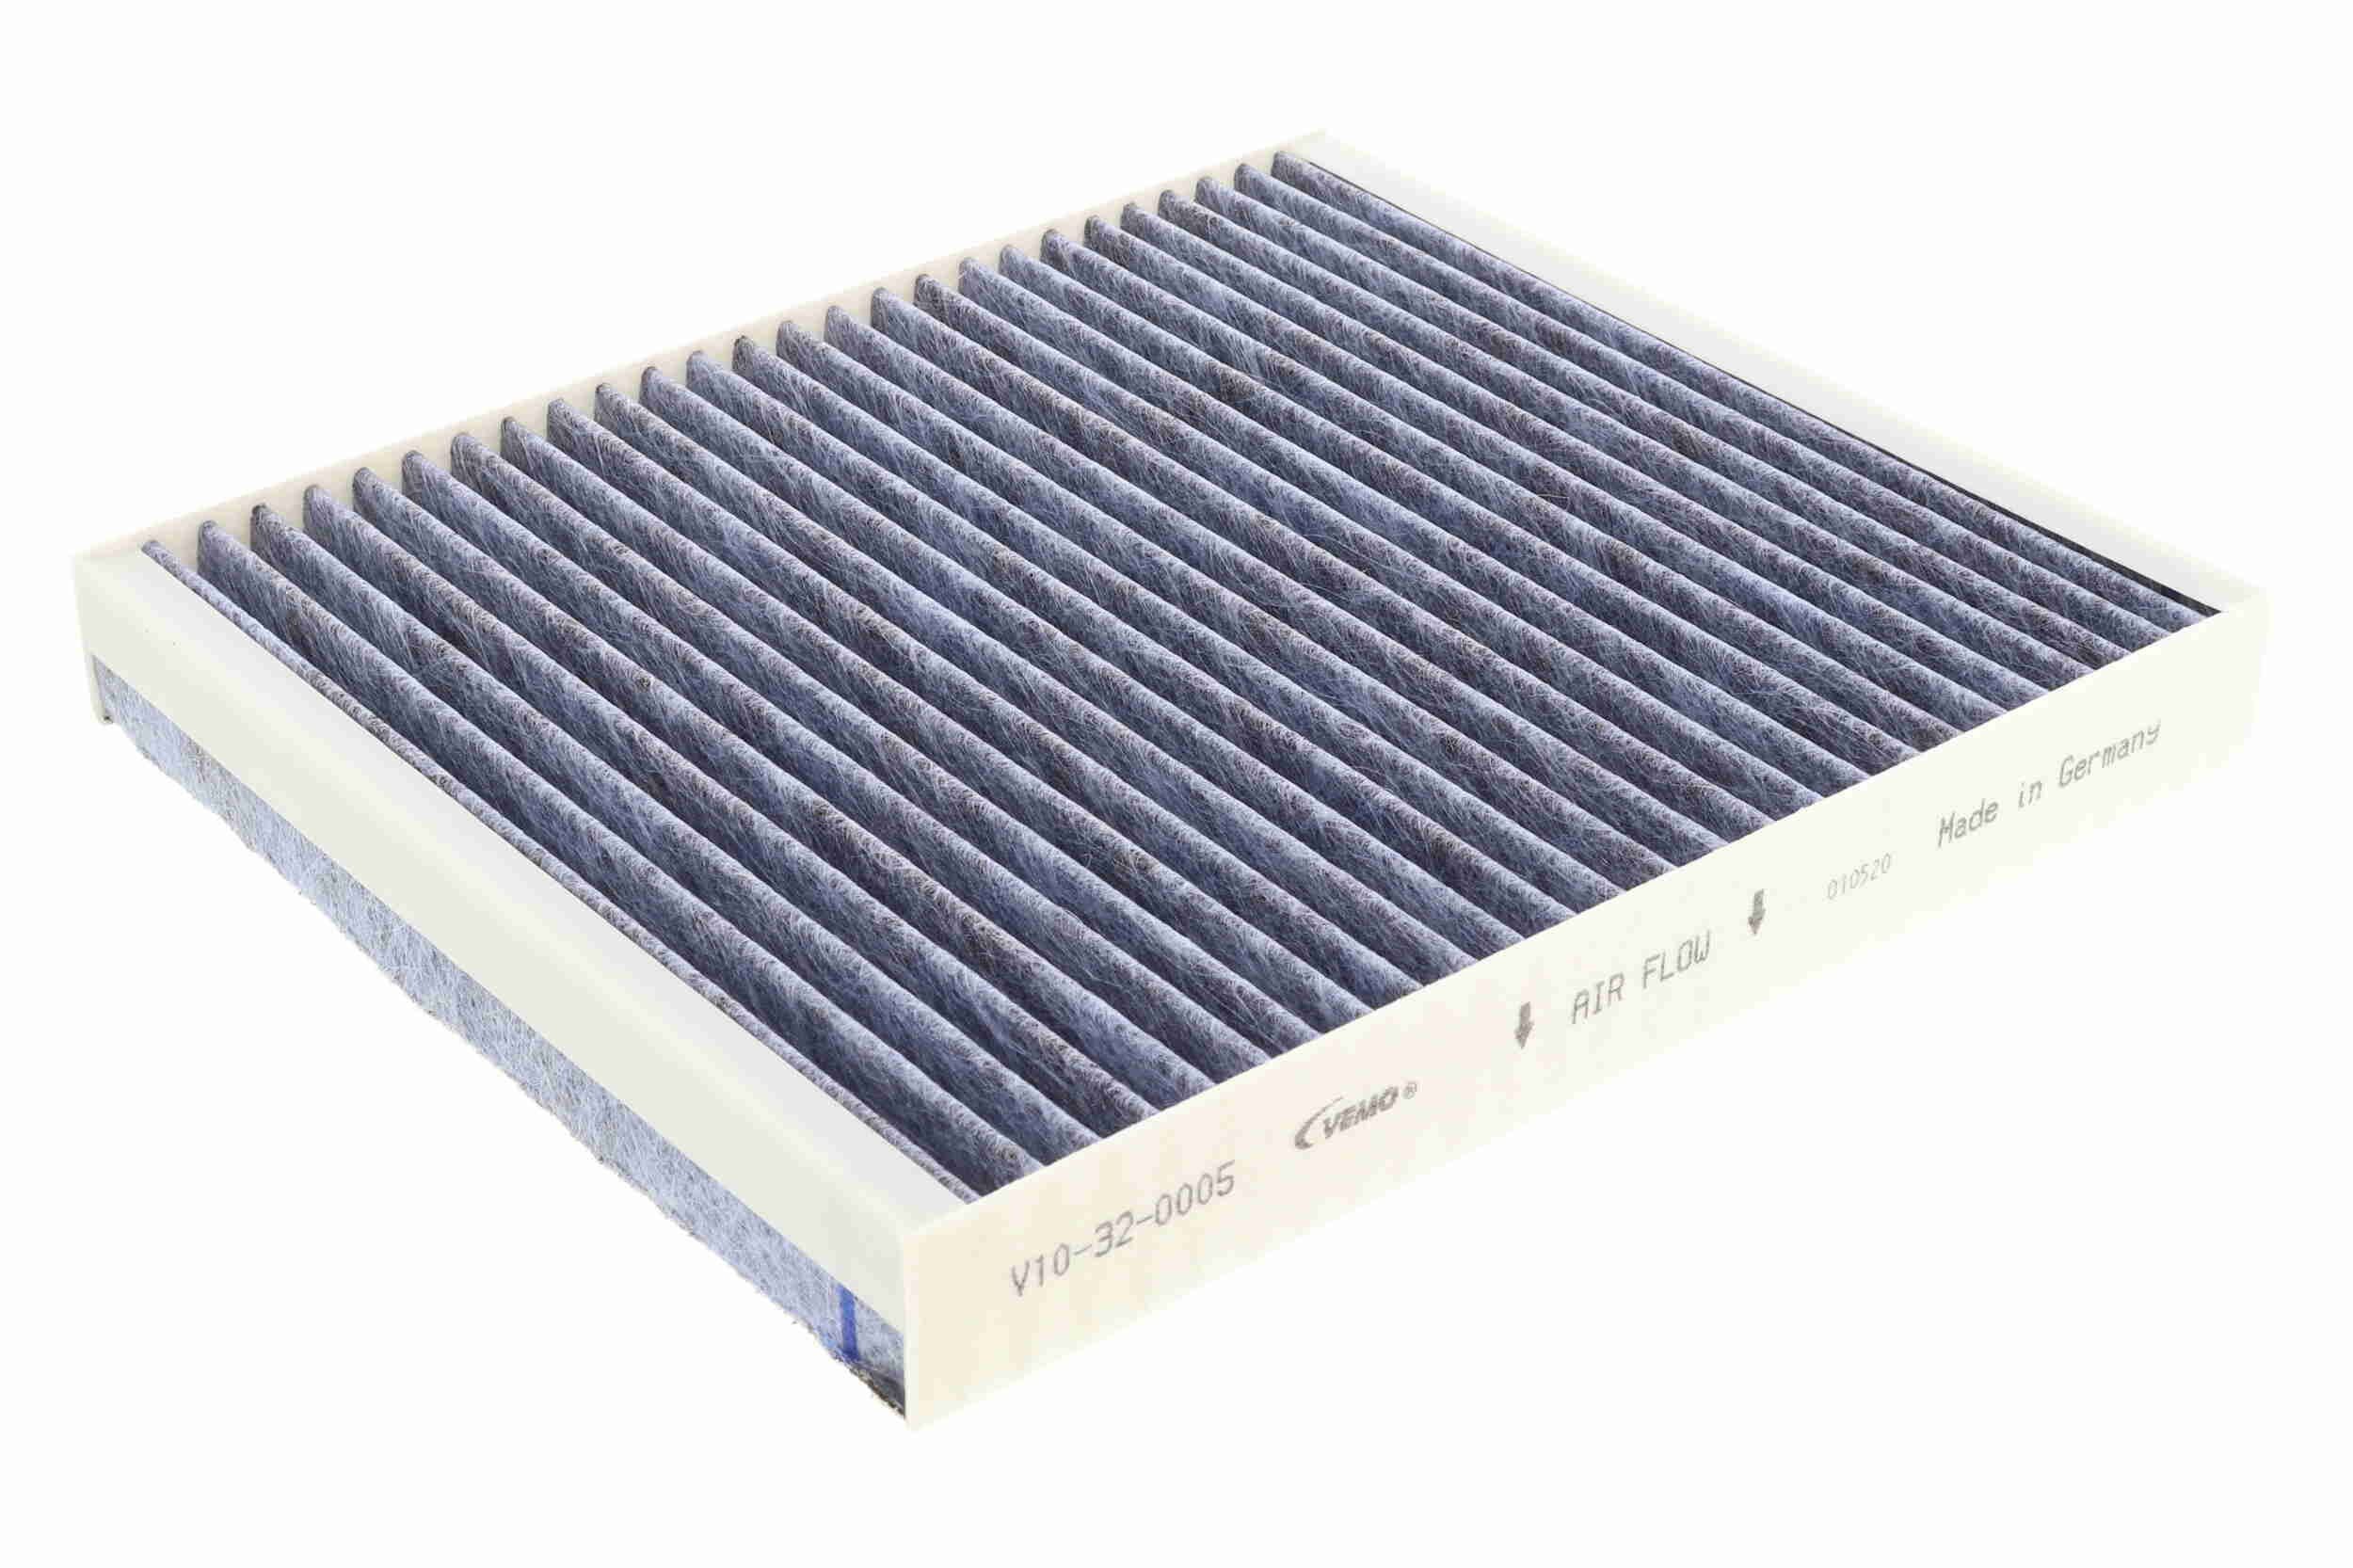 VEMO Filtr klimatyzacji Skoda V10-32-0005 w oryginalnej jakości